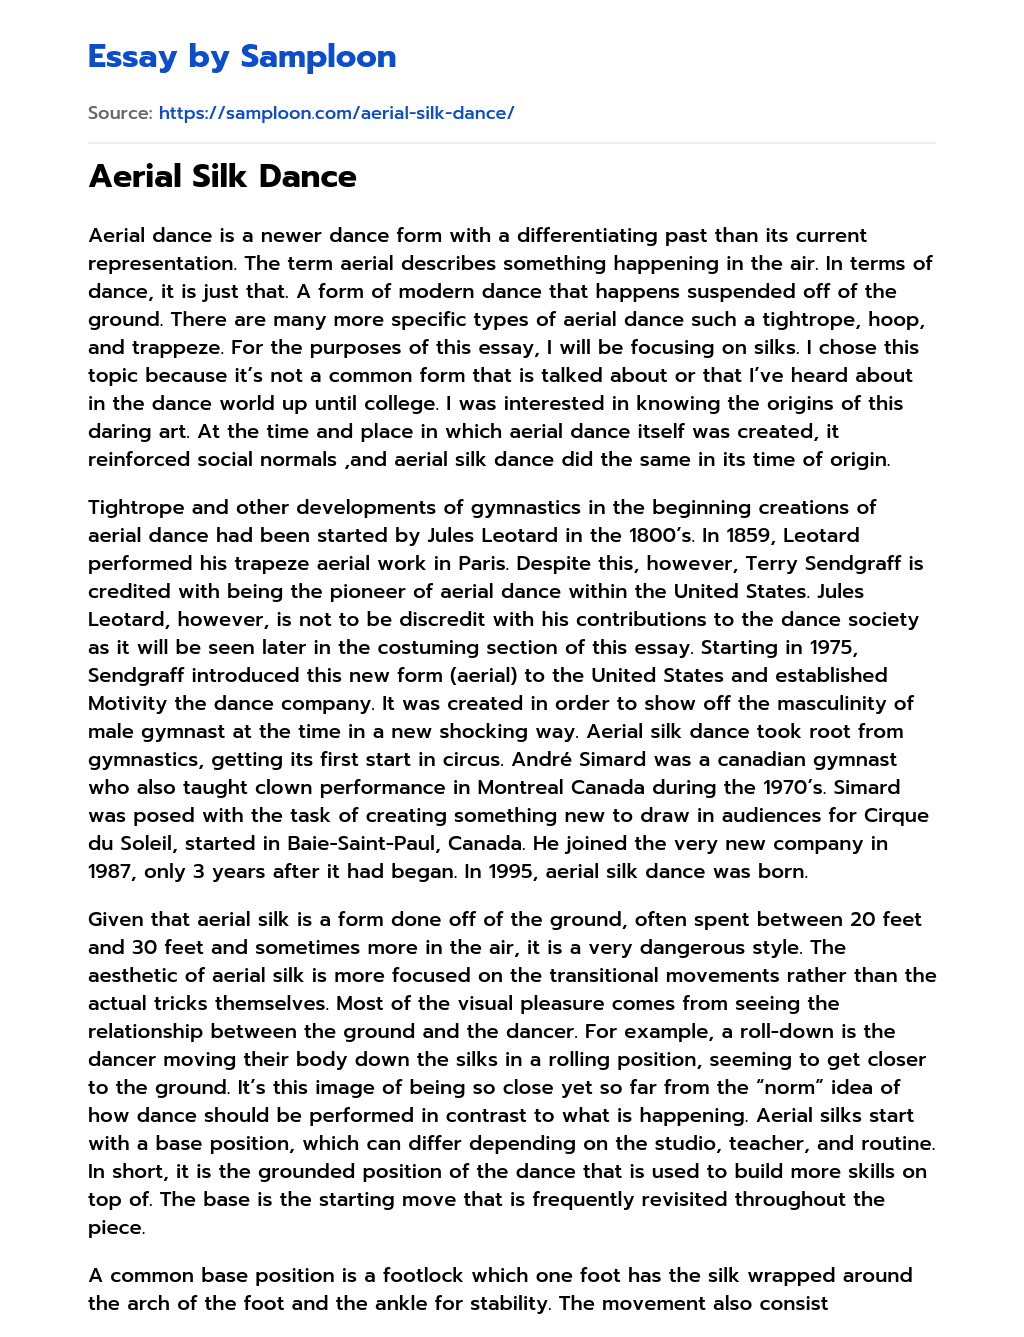 Aerial Silk Dance essay